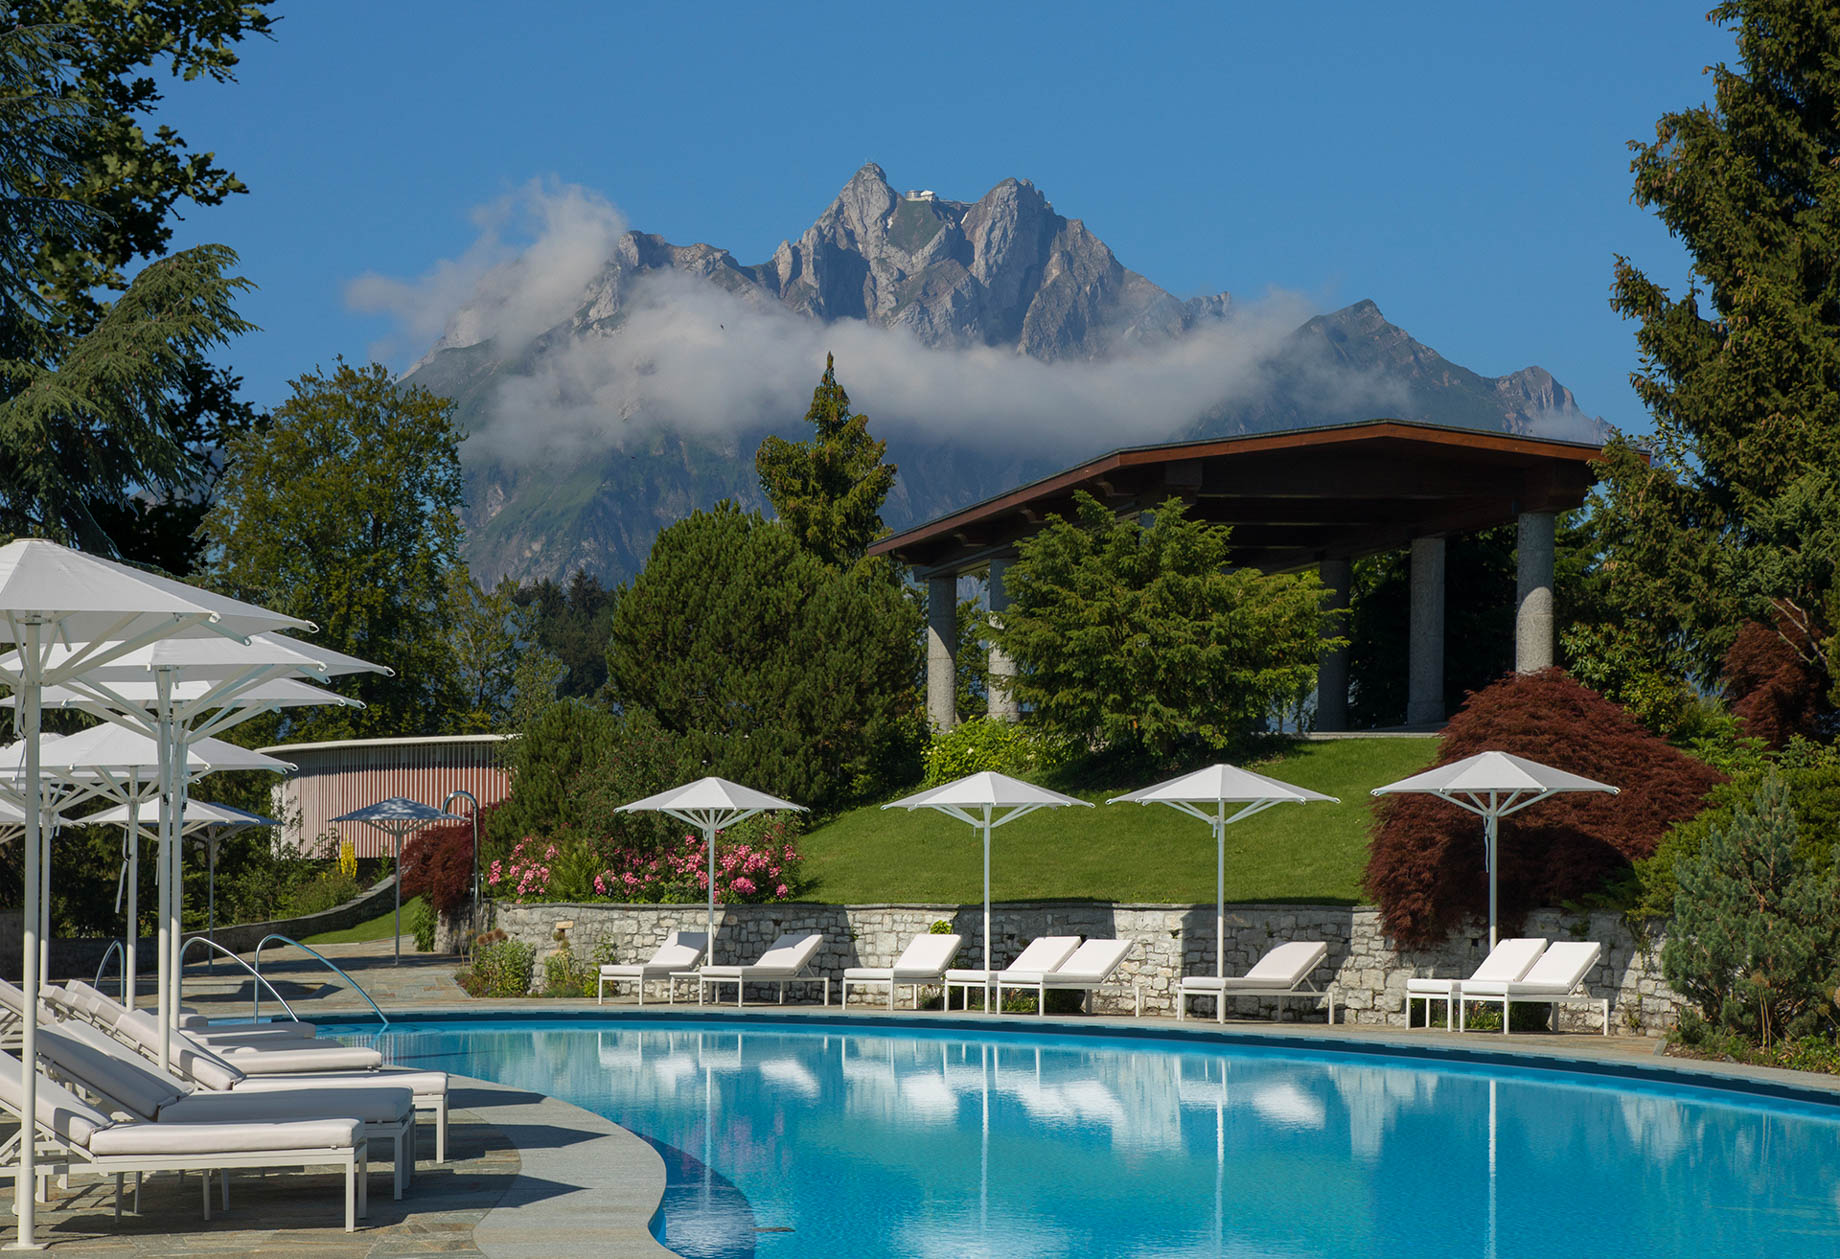 Burgenstock Hotel & Alpine Spa - Obburgen, Switzerland - Outdoor Pool